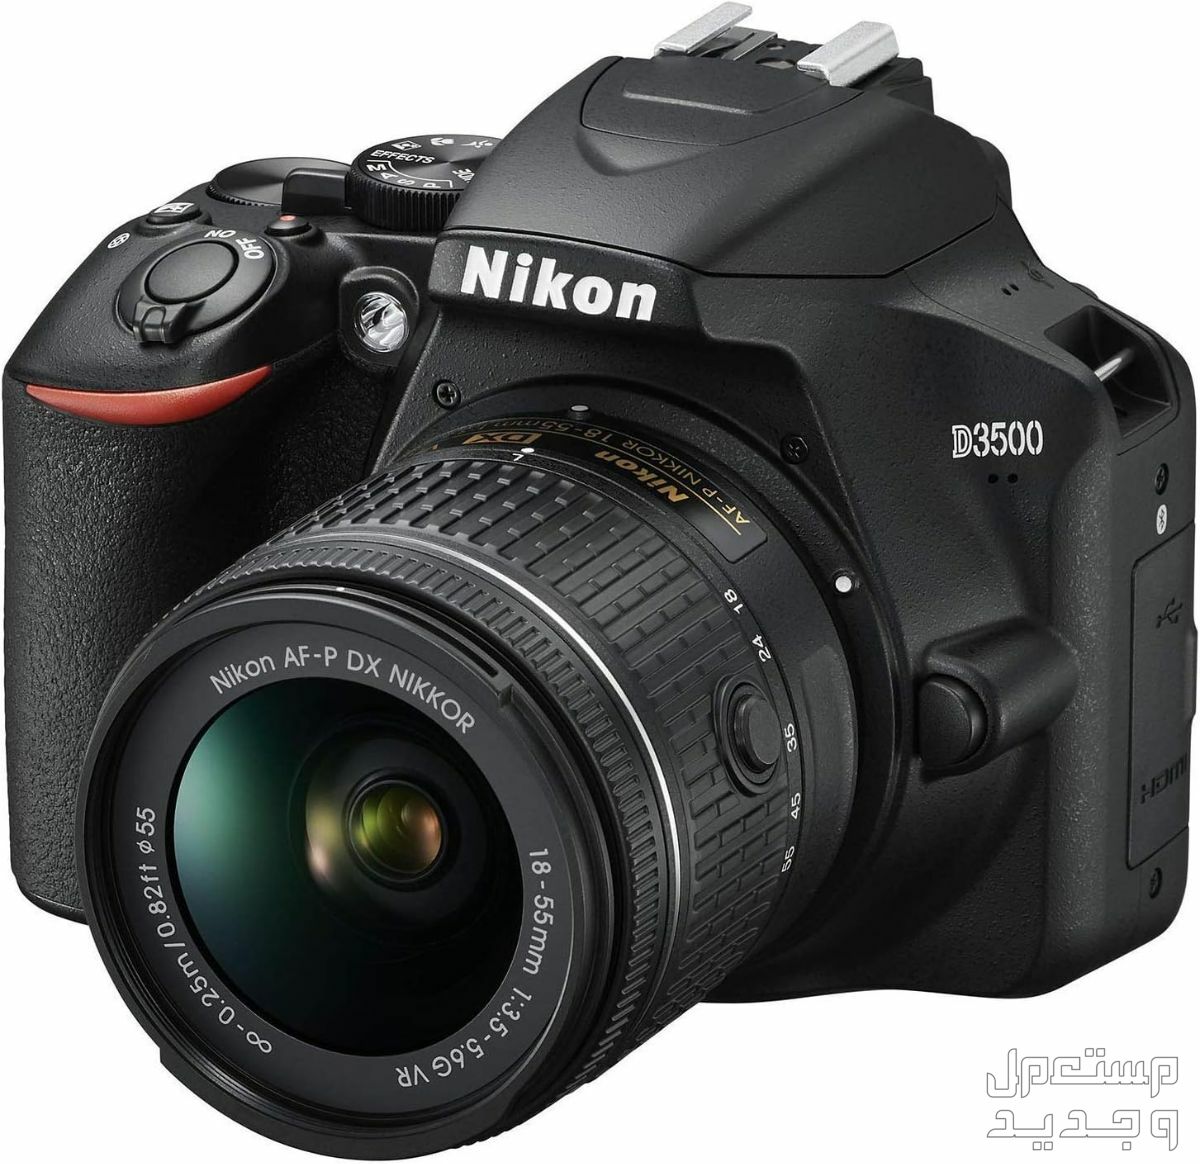 10 كاميرات تصوير ماركات عالمية بأسعار رخيصة في مصر مميزات كاميرا Nikon D3500